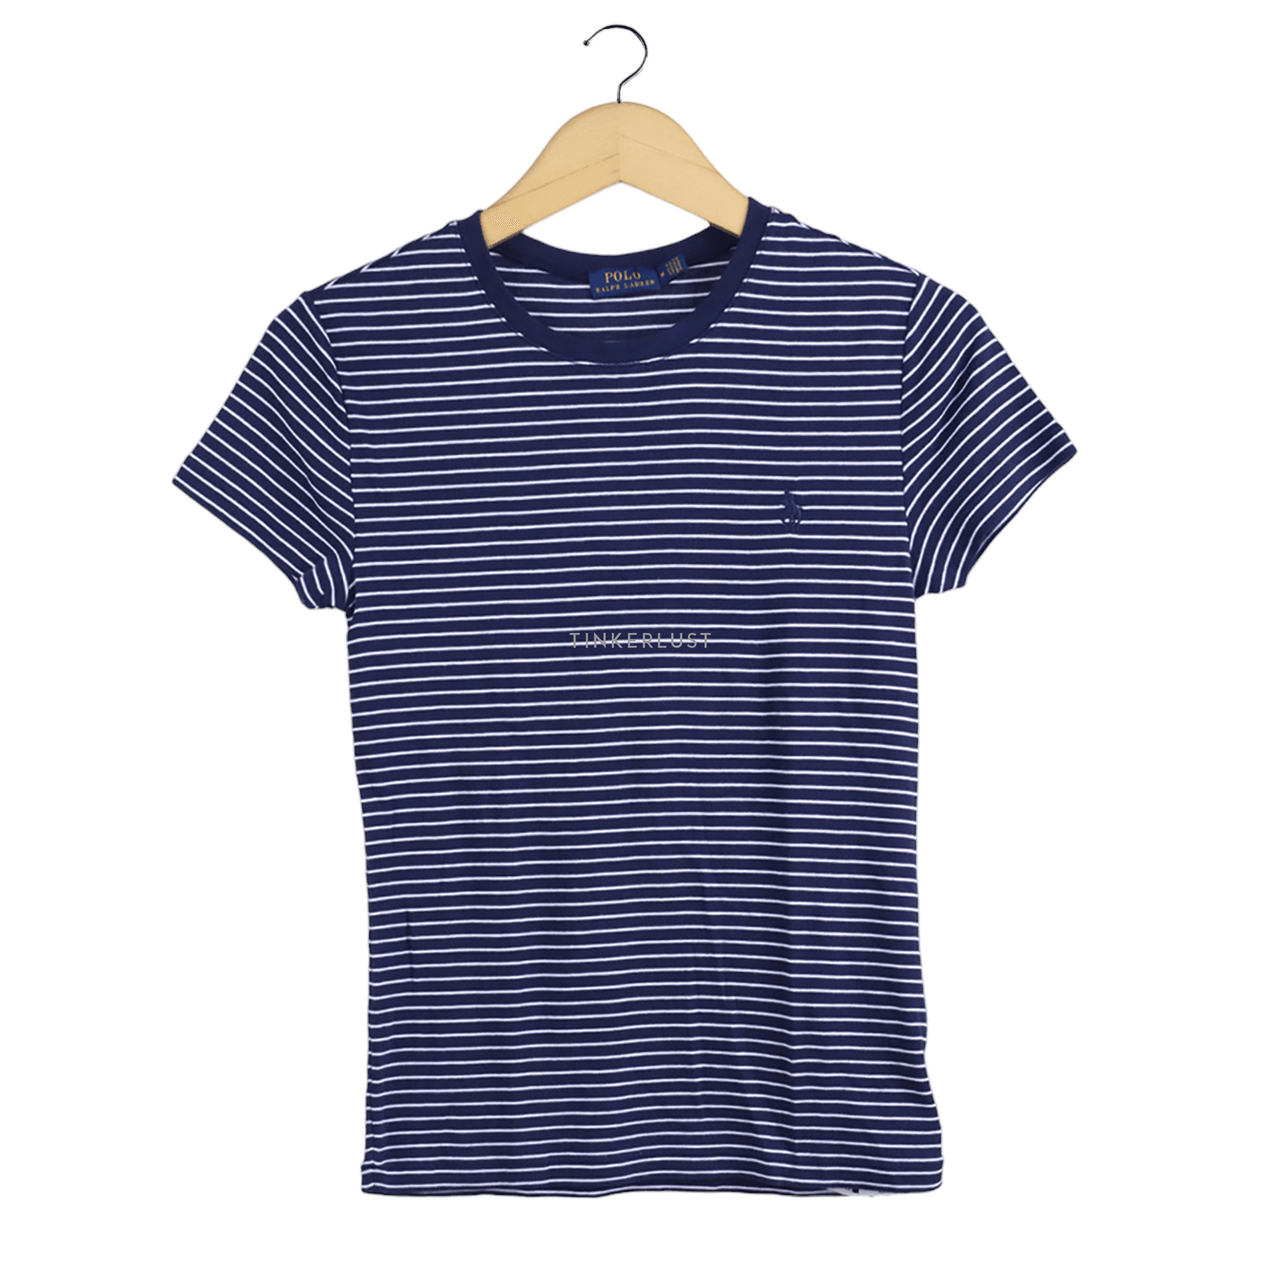 Polo Ralph Lauren Navy Stripes T-Shirt